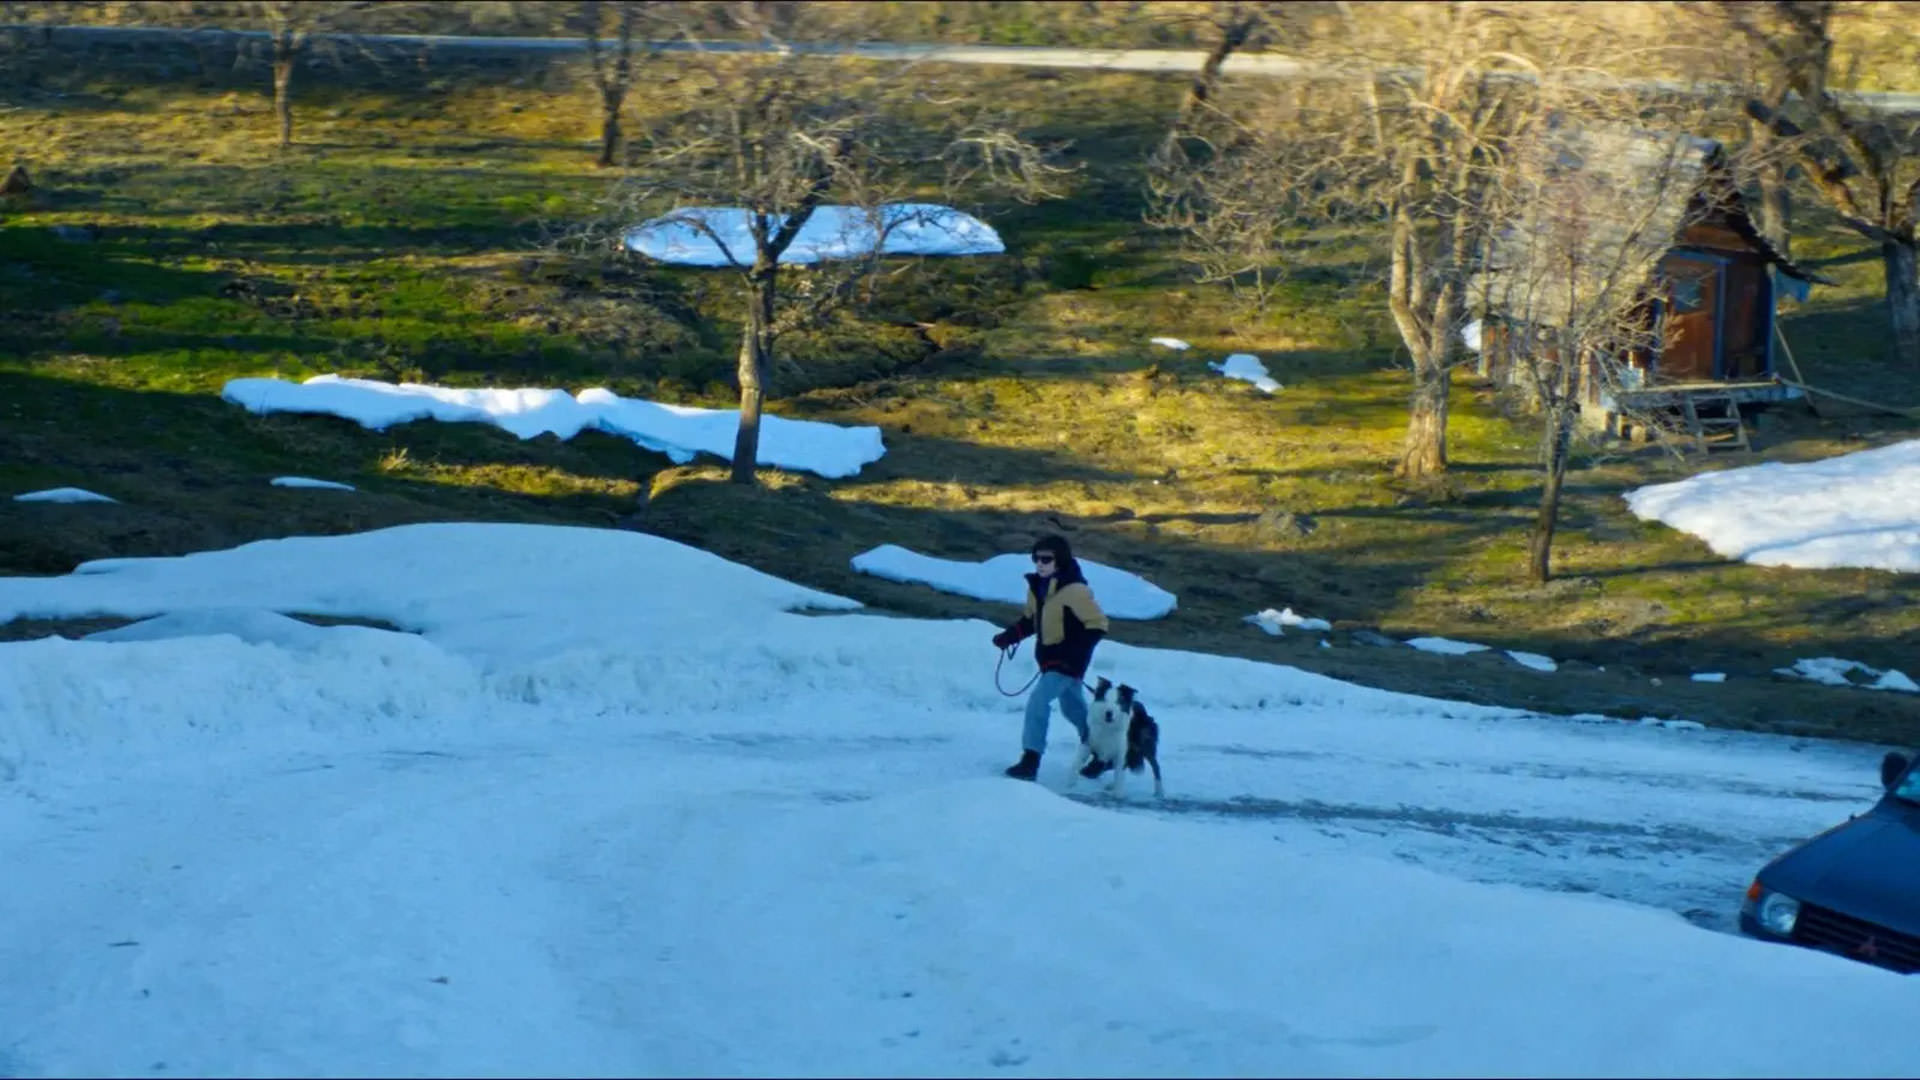 پسرکی روی برف به همراه سگش راه می‌رود در حالی که فضای پشت سرش سبز است در نمایی از فیلم آناتومی یک سقوط به کارگردانی ژوستین تریه